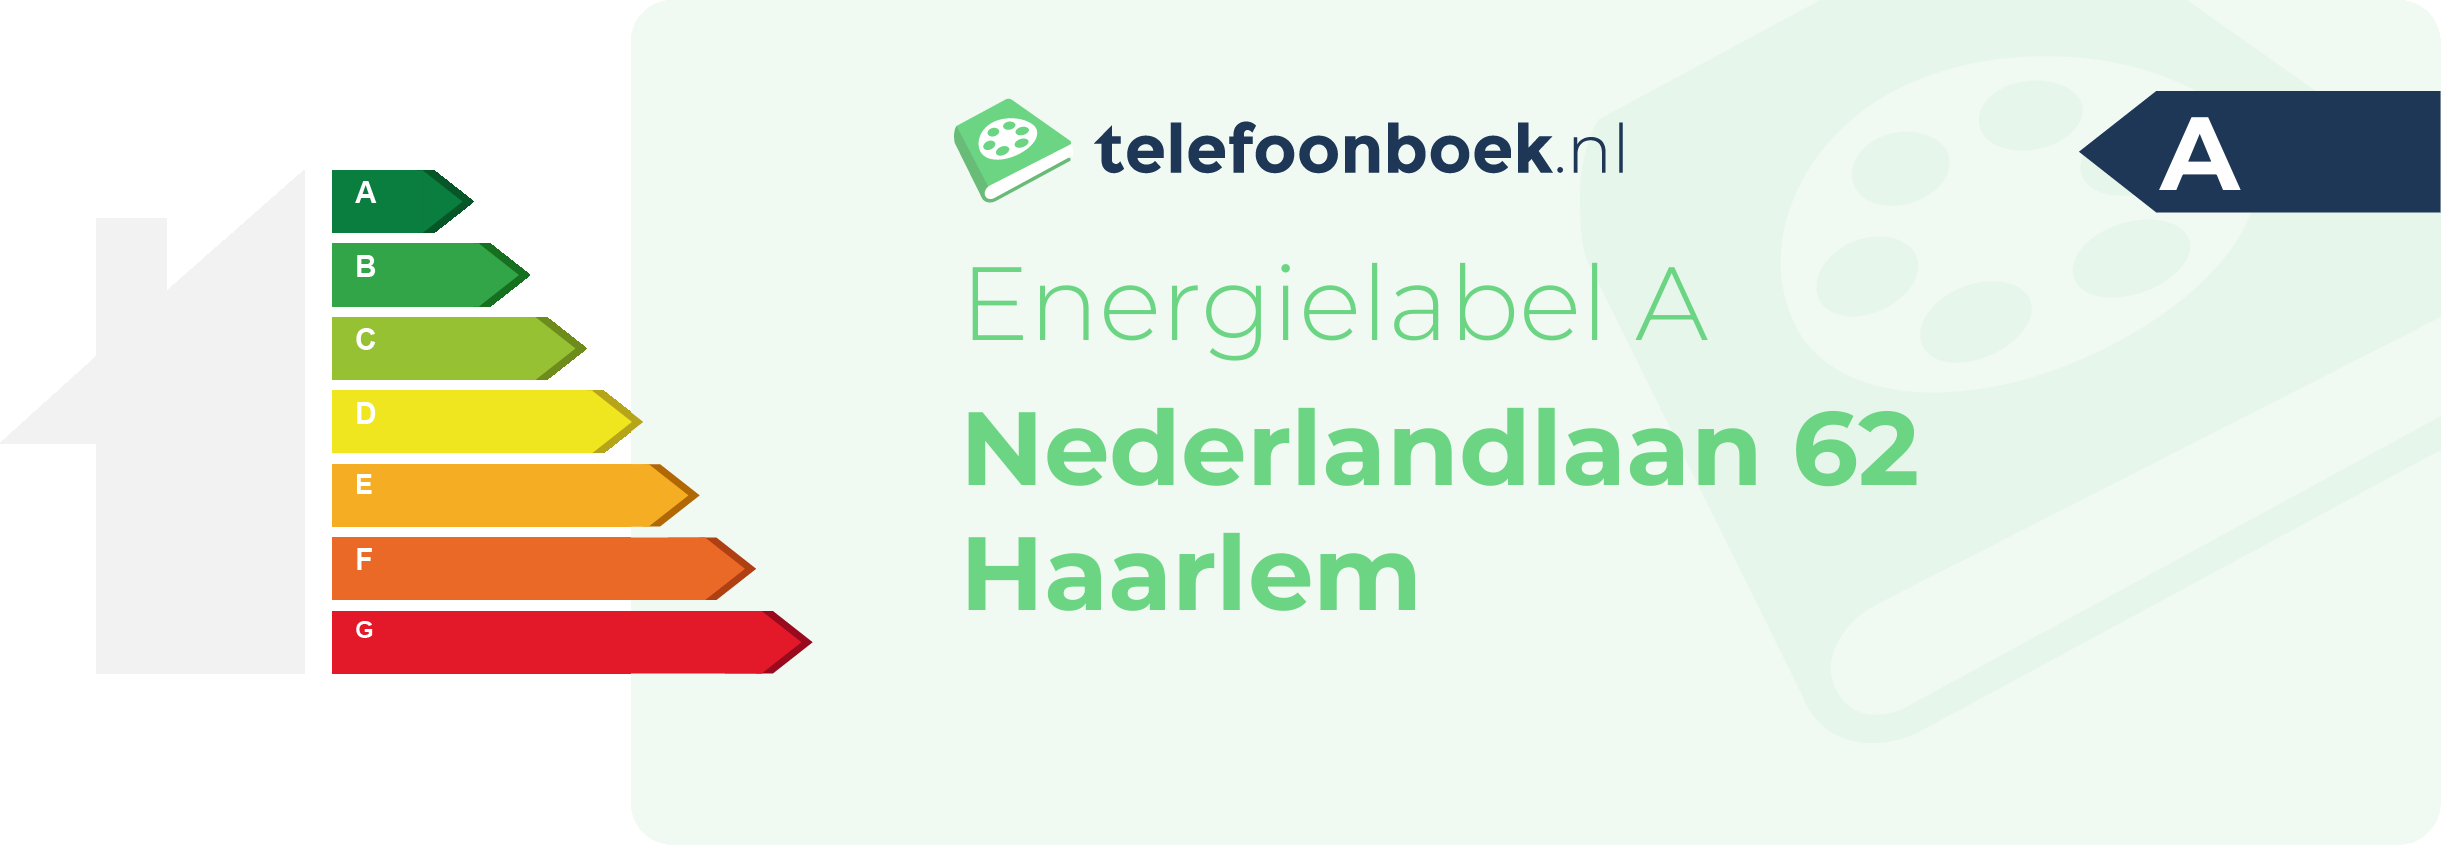 Energielabel Nederlandlaan 62 Haarlem